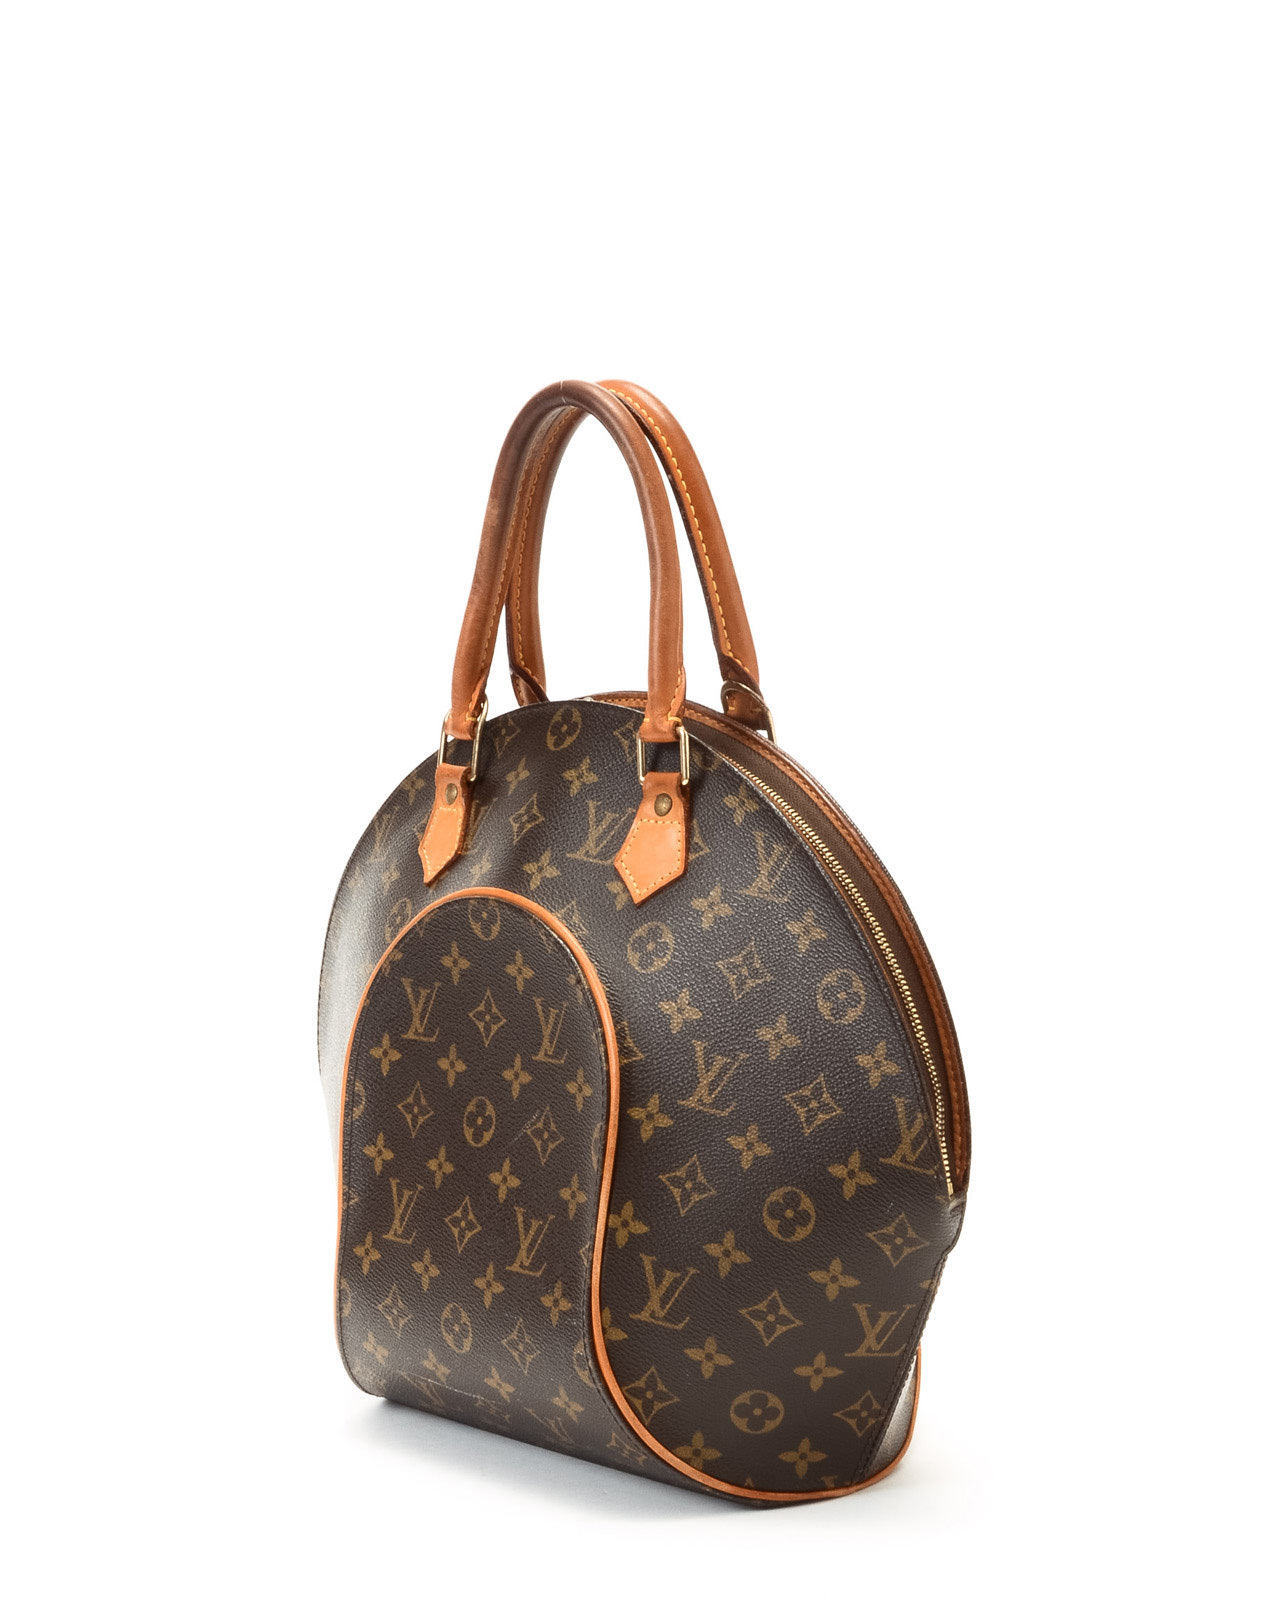 Lyst - Louis Vuitton Brown Ellipse Mm Handbag in Brown